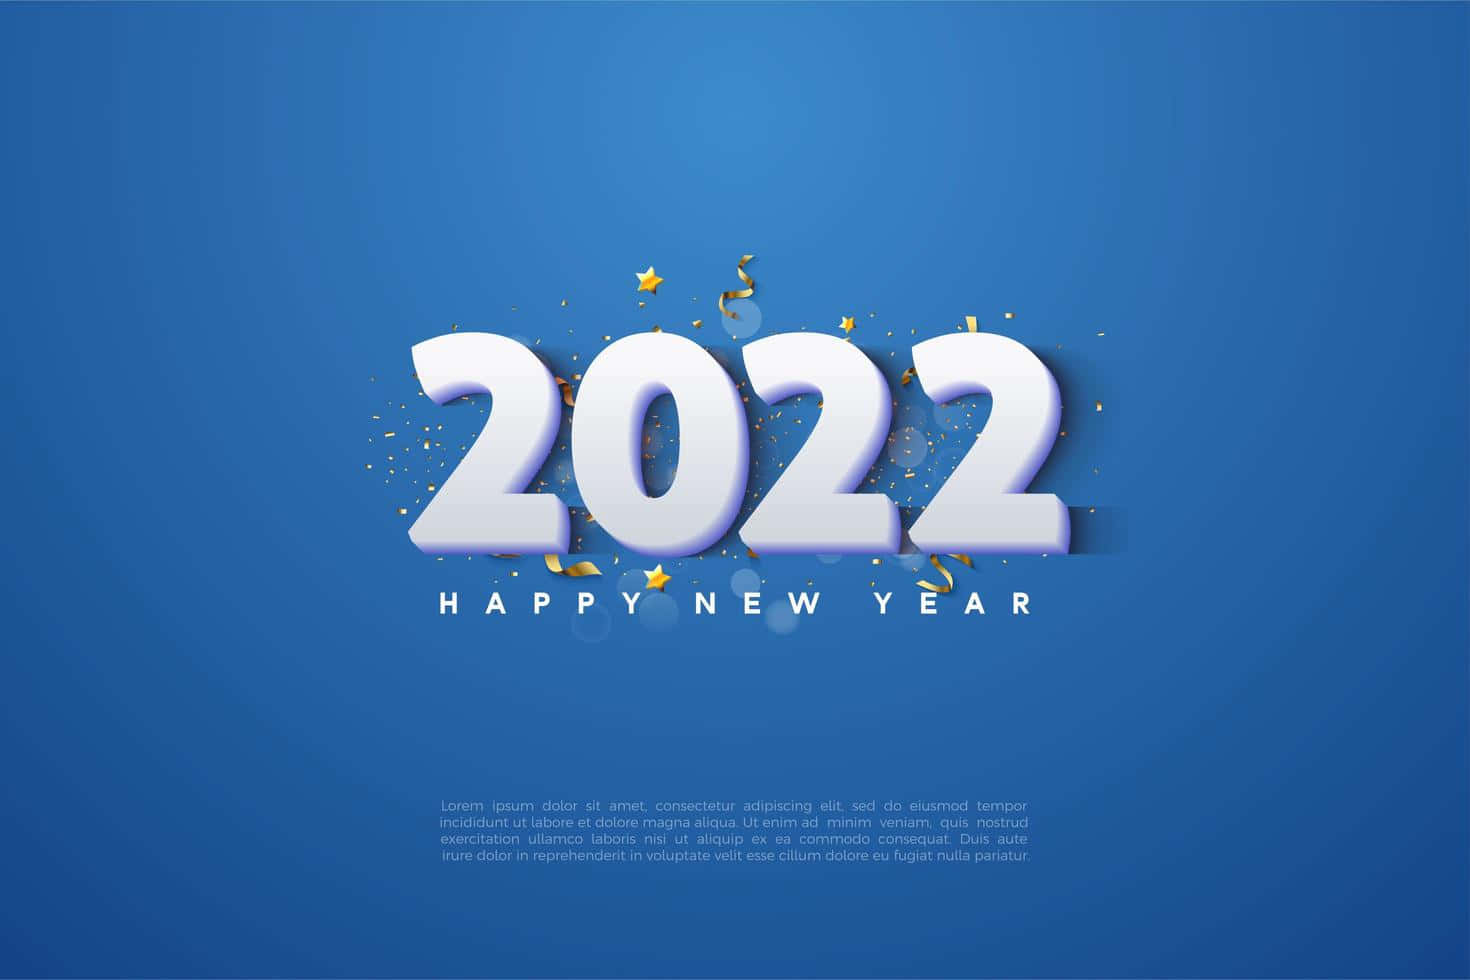 Fondoazul Sólido De Feliz Año Nuevo 2022.